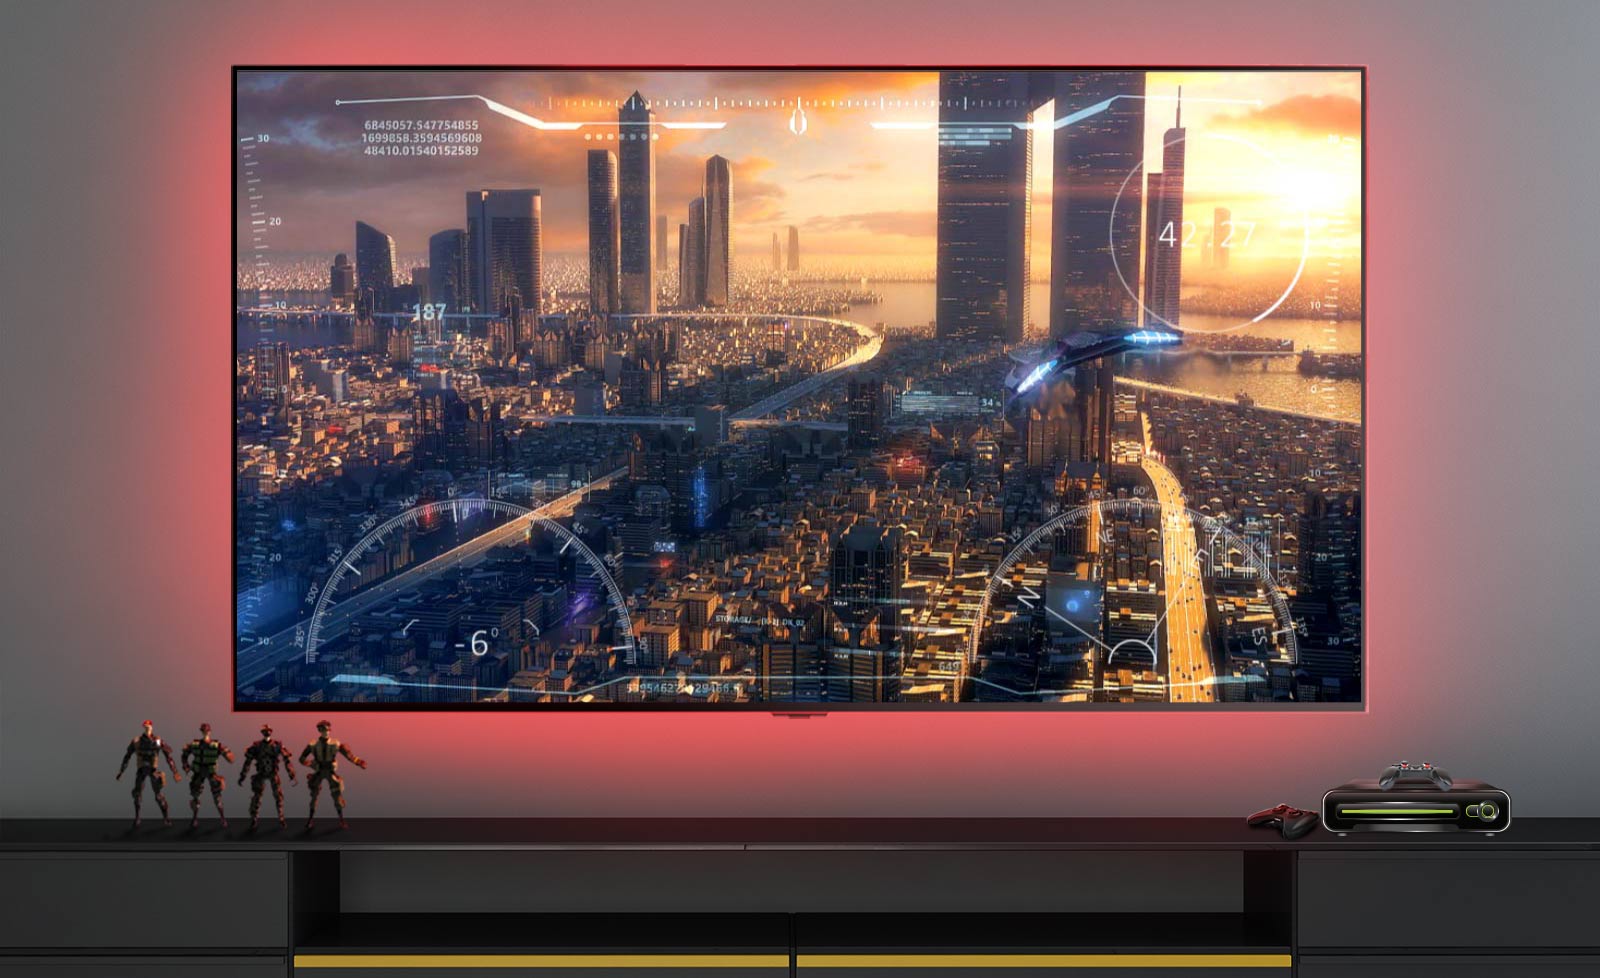 Σκηνή από βιντεοπαιχνίδι σε τηλεόραση, όπου φαίνεται ένα διαστημόπλοιο που πετά πάνω από μια πόλη (αναπαραγωγή βίντεο).